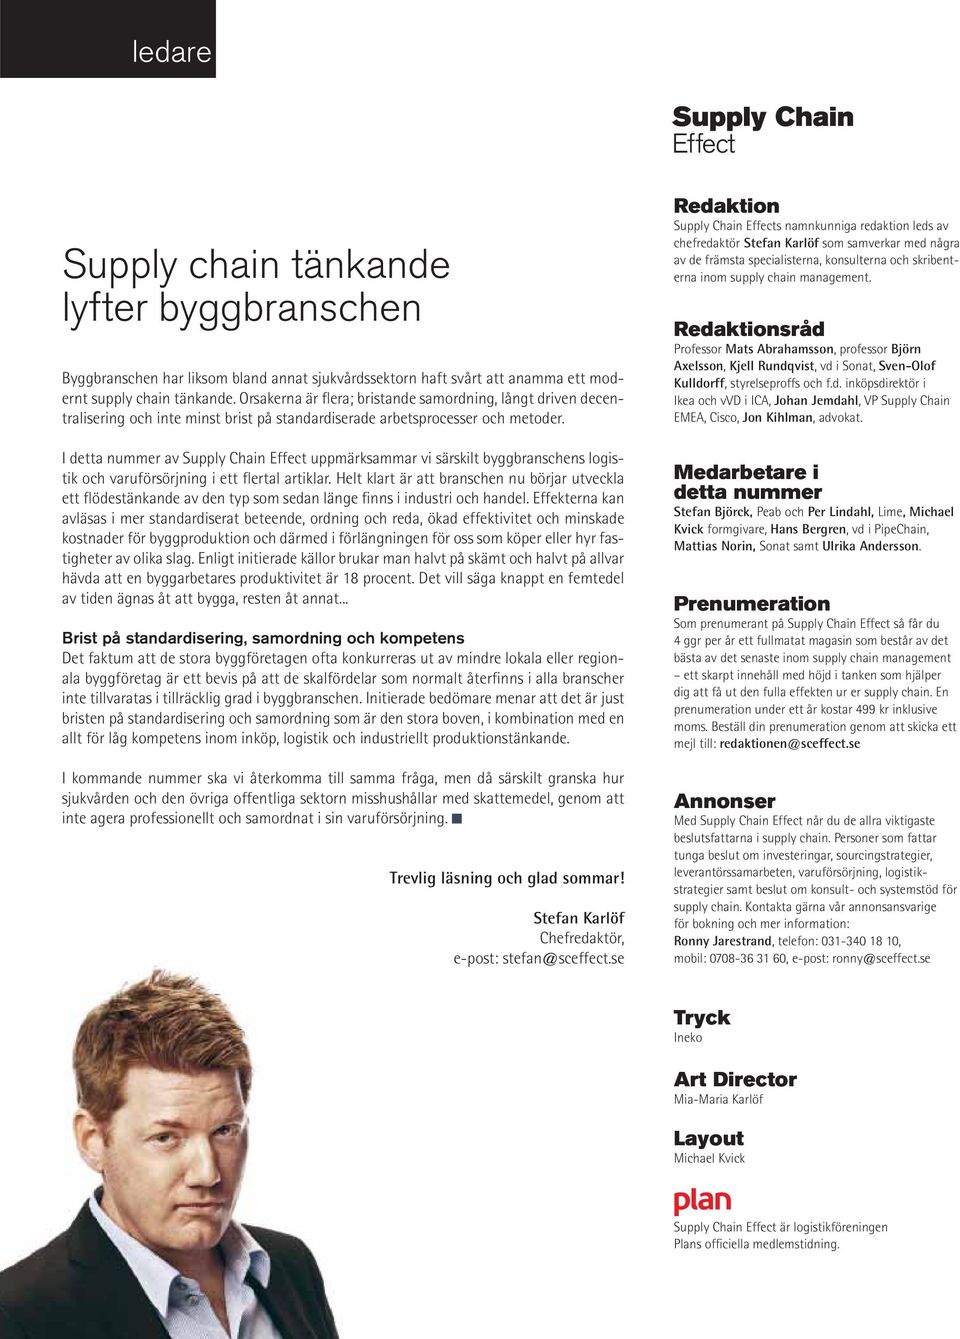 I detta nummer av Supply Chain Effect uppmärksammar vi särskilt byggbranschens logistik och varuförsörjning i ett flertal artiklar.